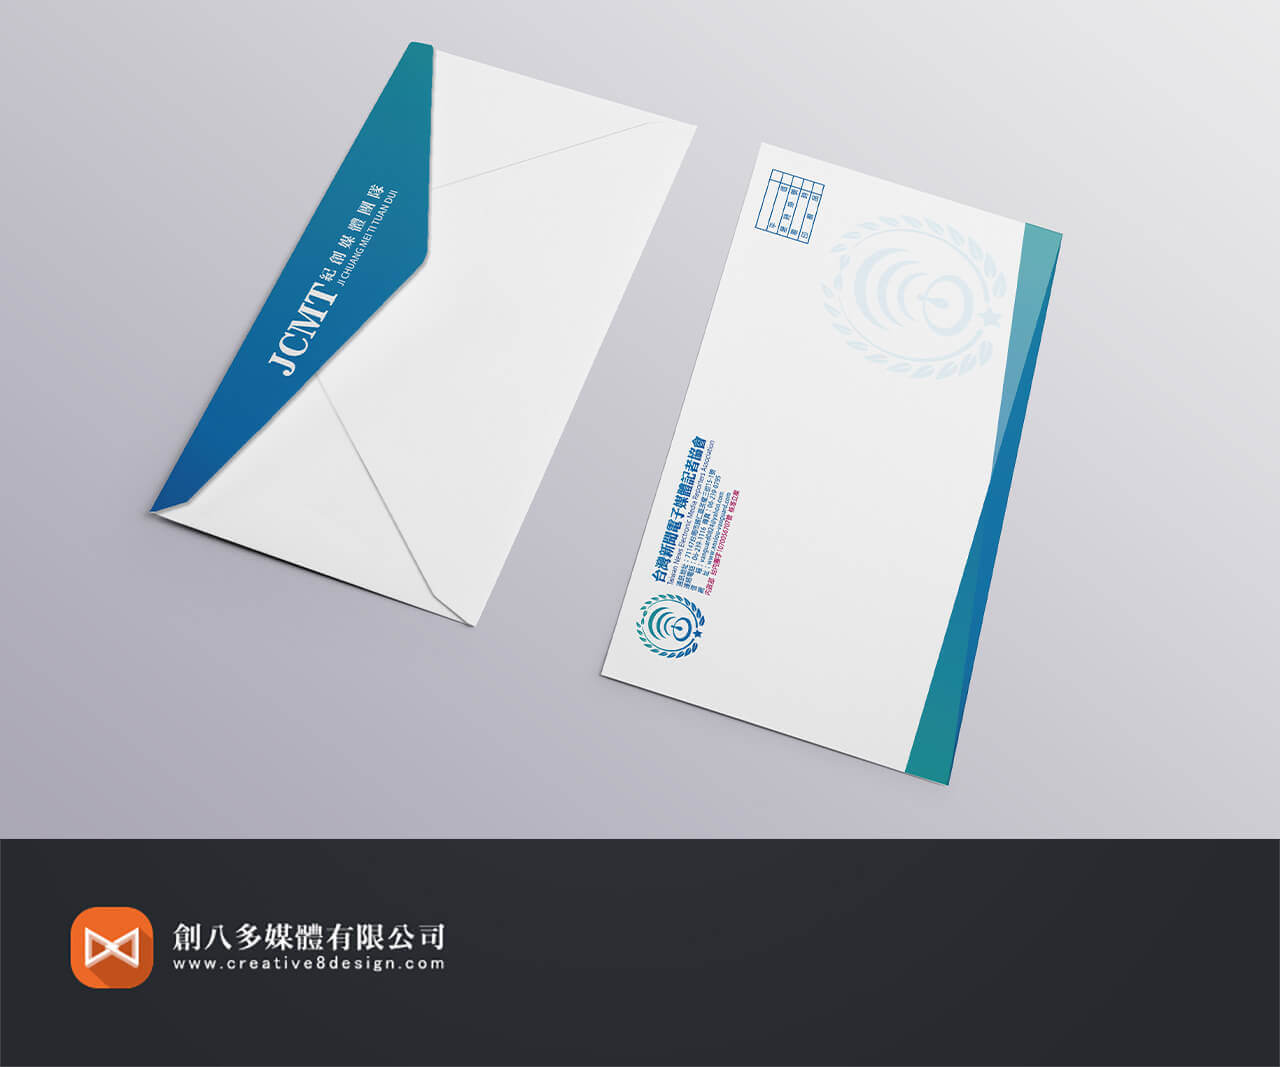 台灣新聞電子媒體記者協會-信封設計(1)的圖片